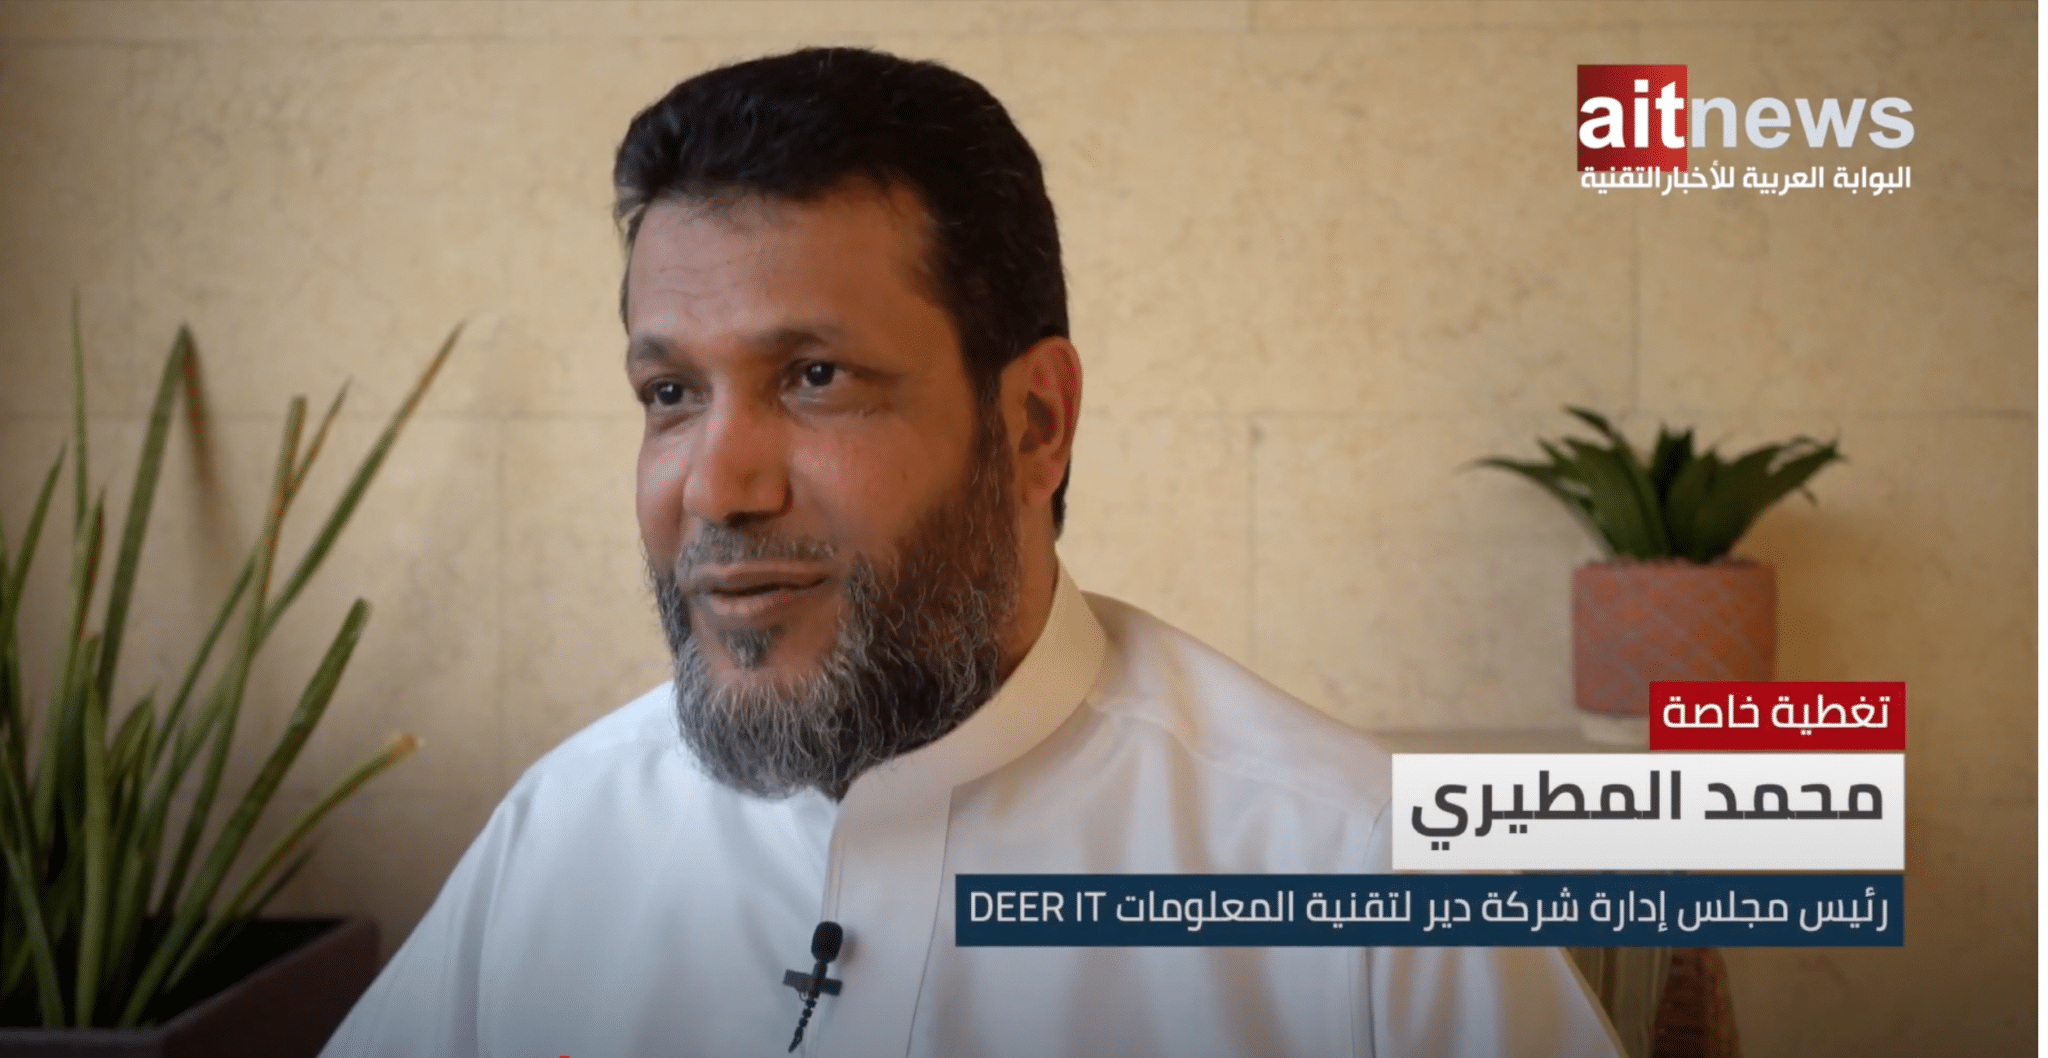 محمد المطيري، رئيس مجلس إدارة شركة دير لتقنية المعلومات DEER IT